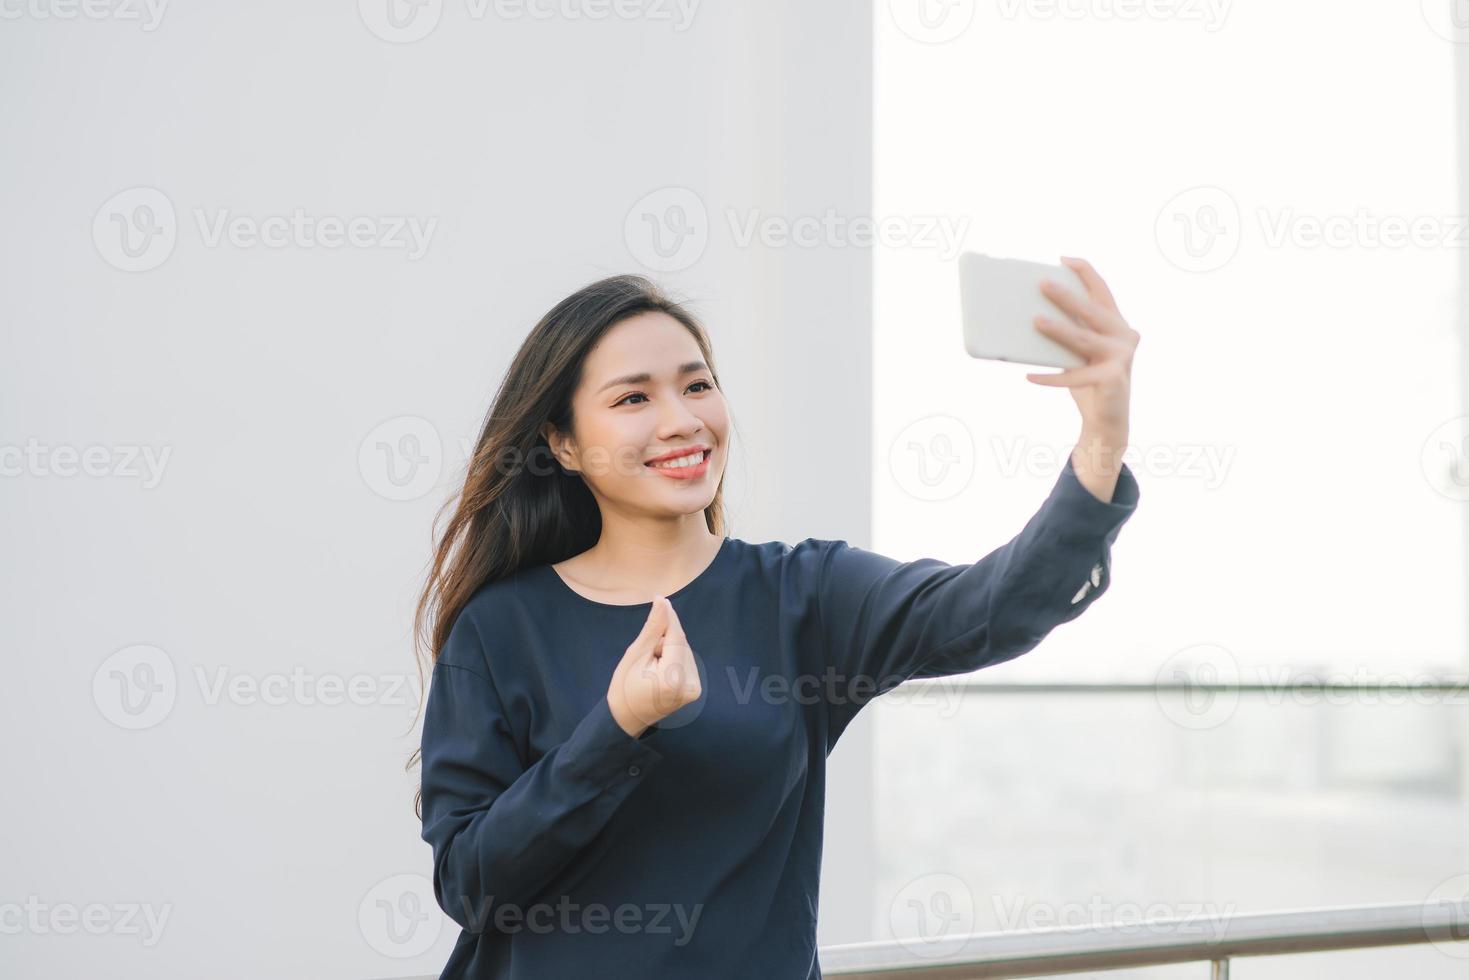 relajado y alegre. trabajo y vacaciones. retrato al aire libre de una joven feliz usando un smartphone, haciendo una foto selfie y mirándote en la terraza con una hermosa vista de la ciudad.